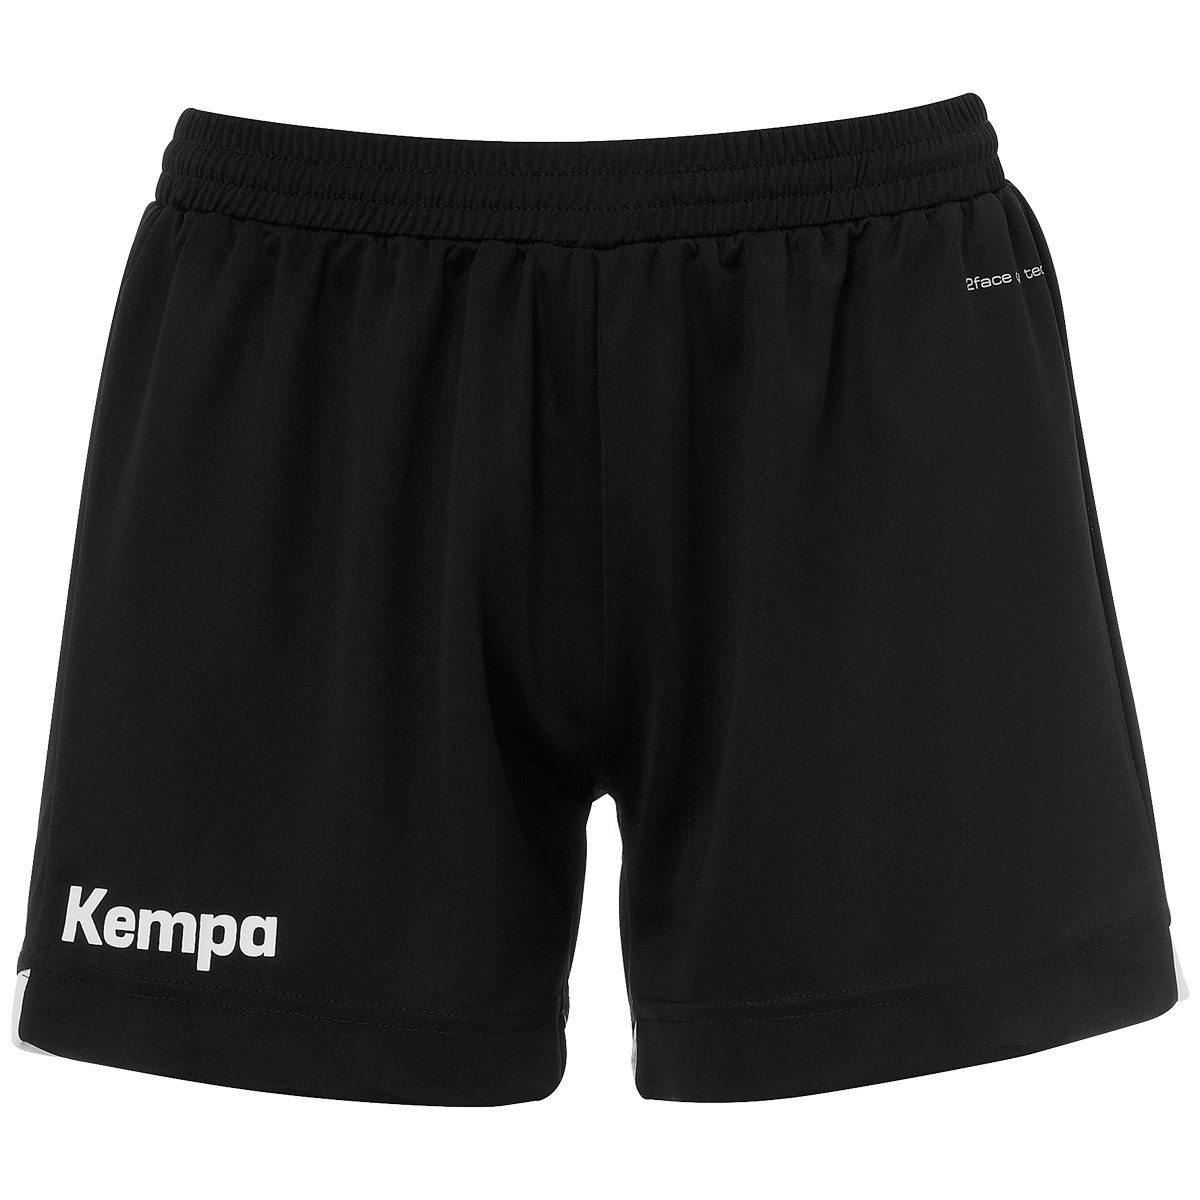 Kempa Shorts WOMEN schwarz/weiß PLAYER Shorts Kempa